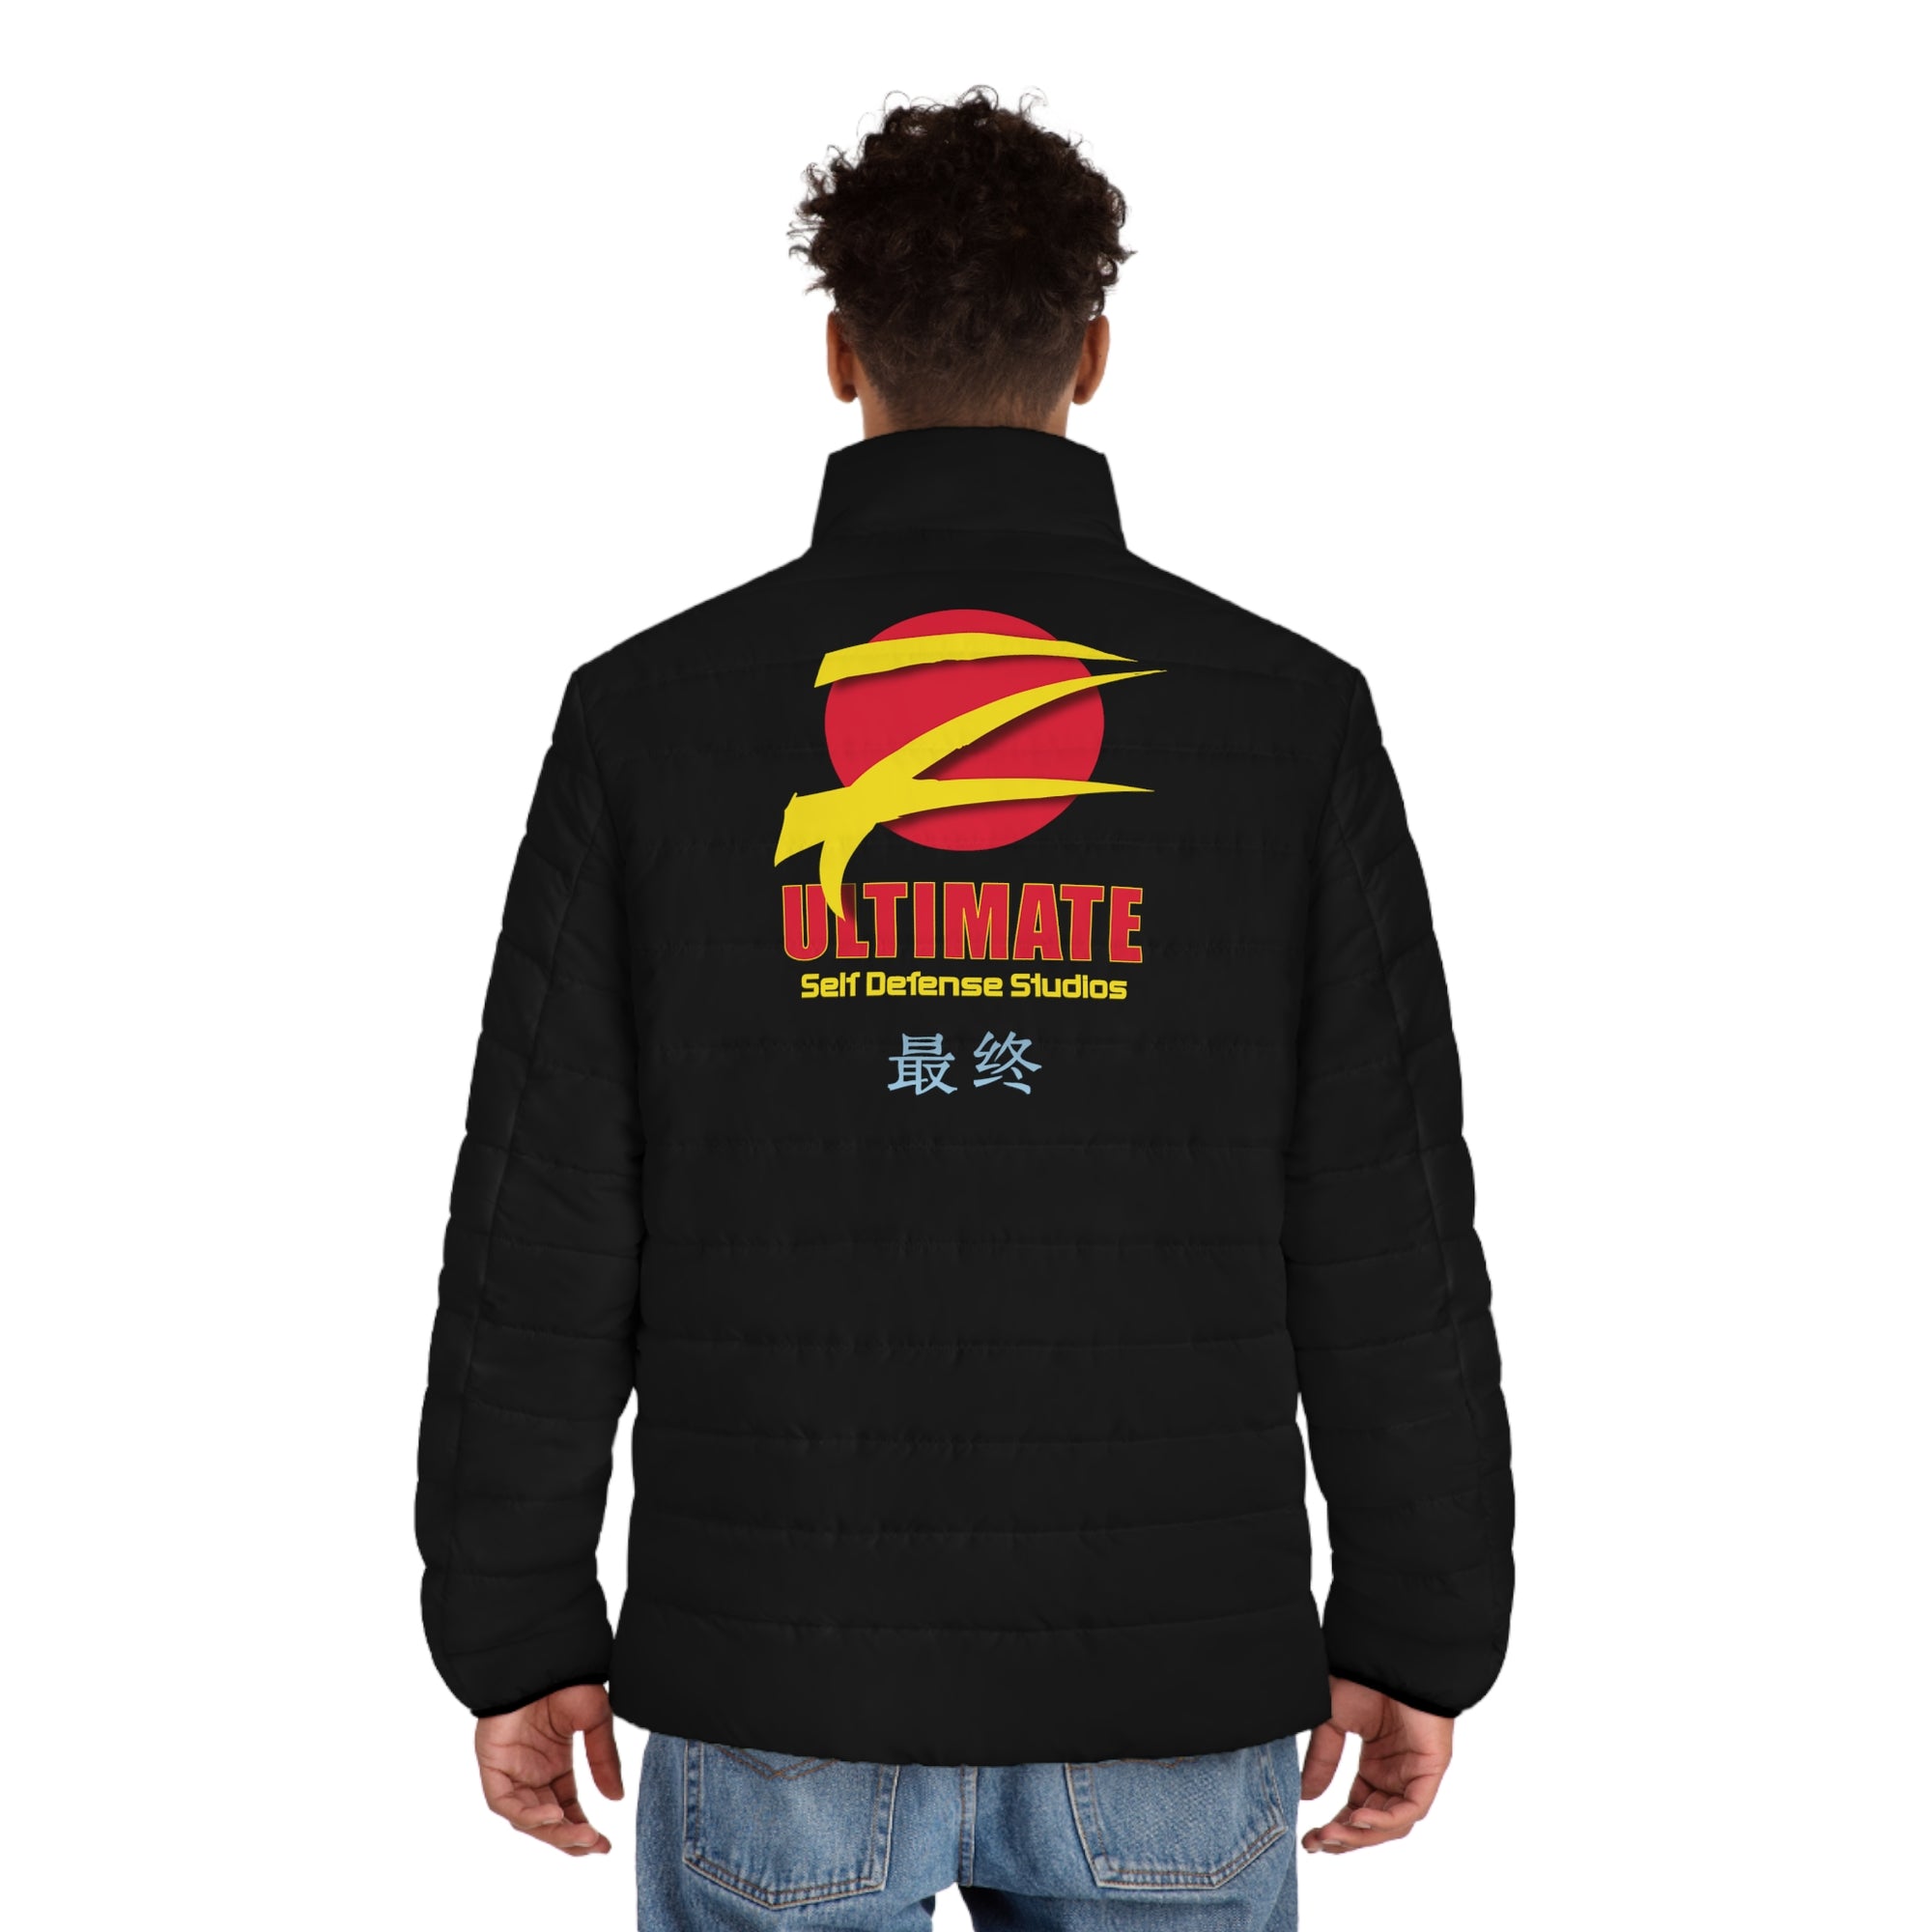 Z-Ultimate Men's Puffer Jacket